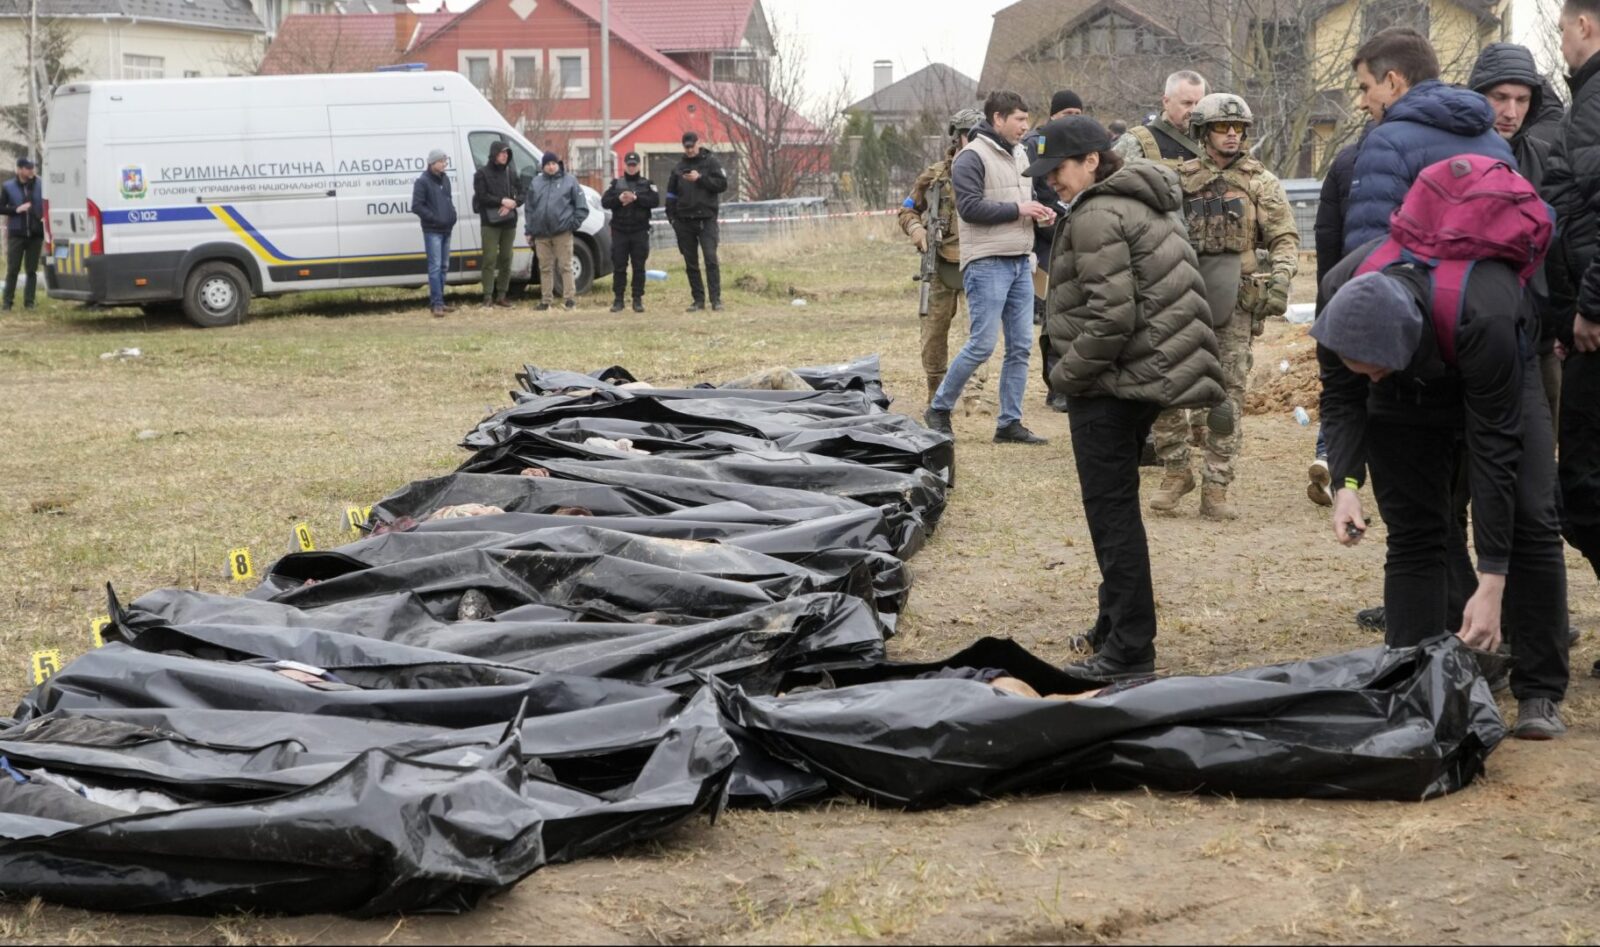 عدد القتلى المدنيين في أوكرانيا